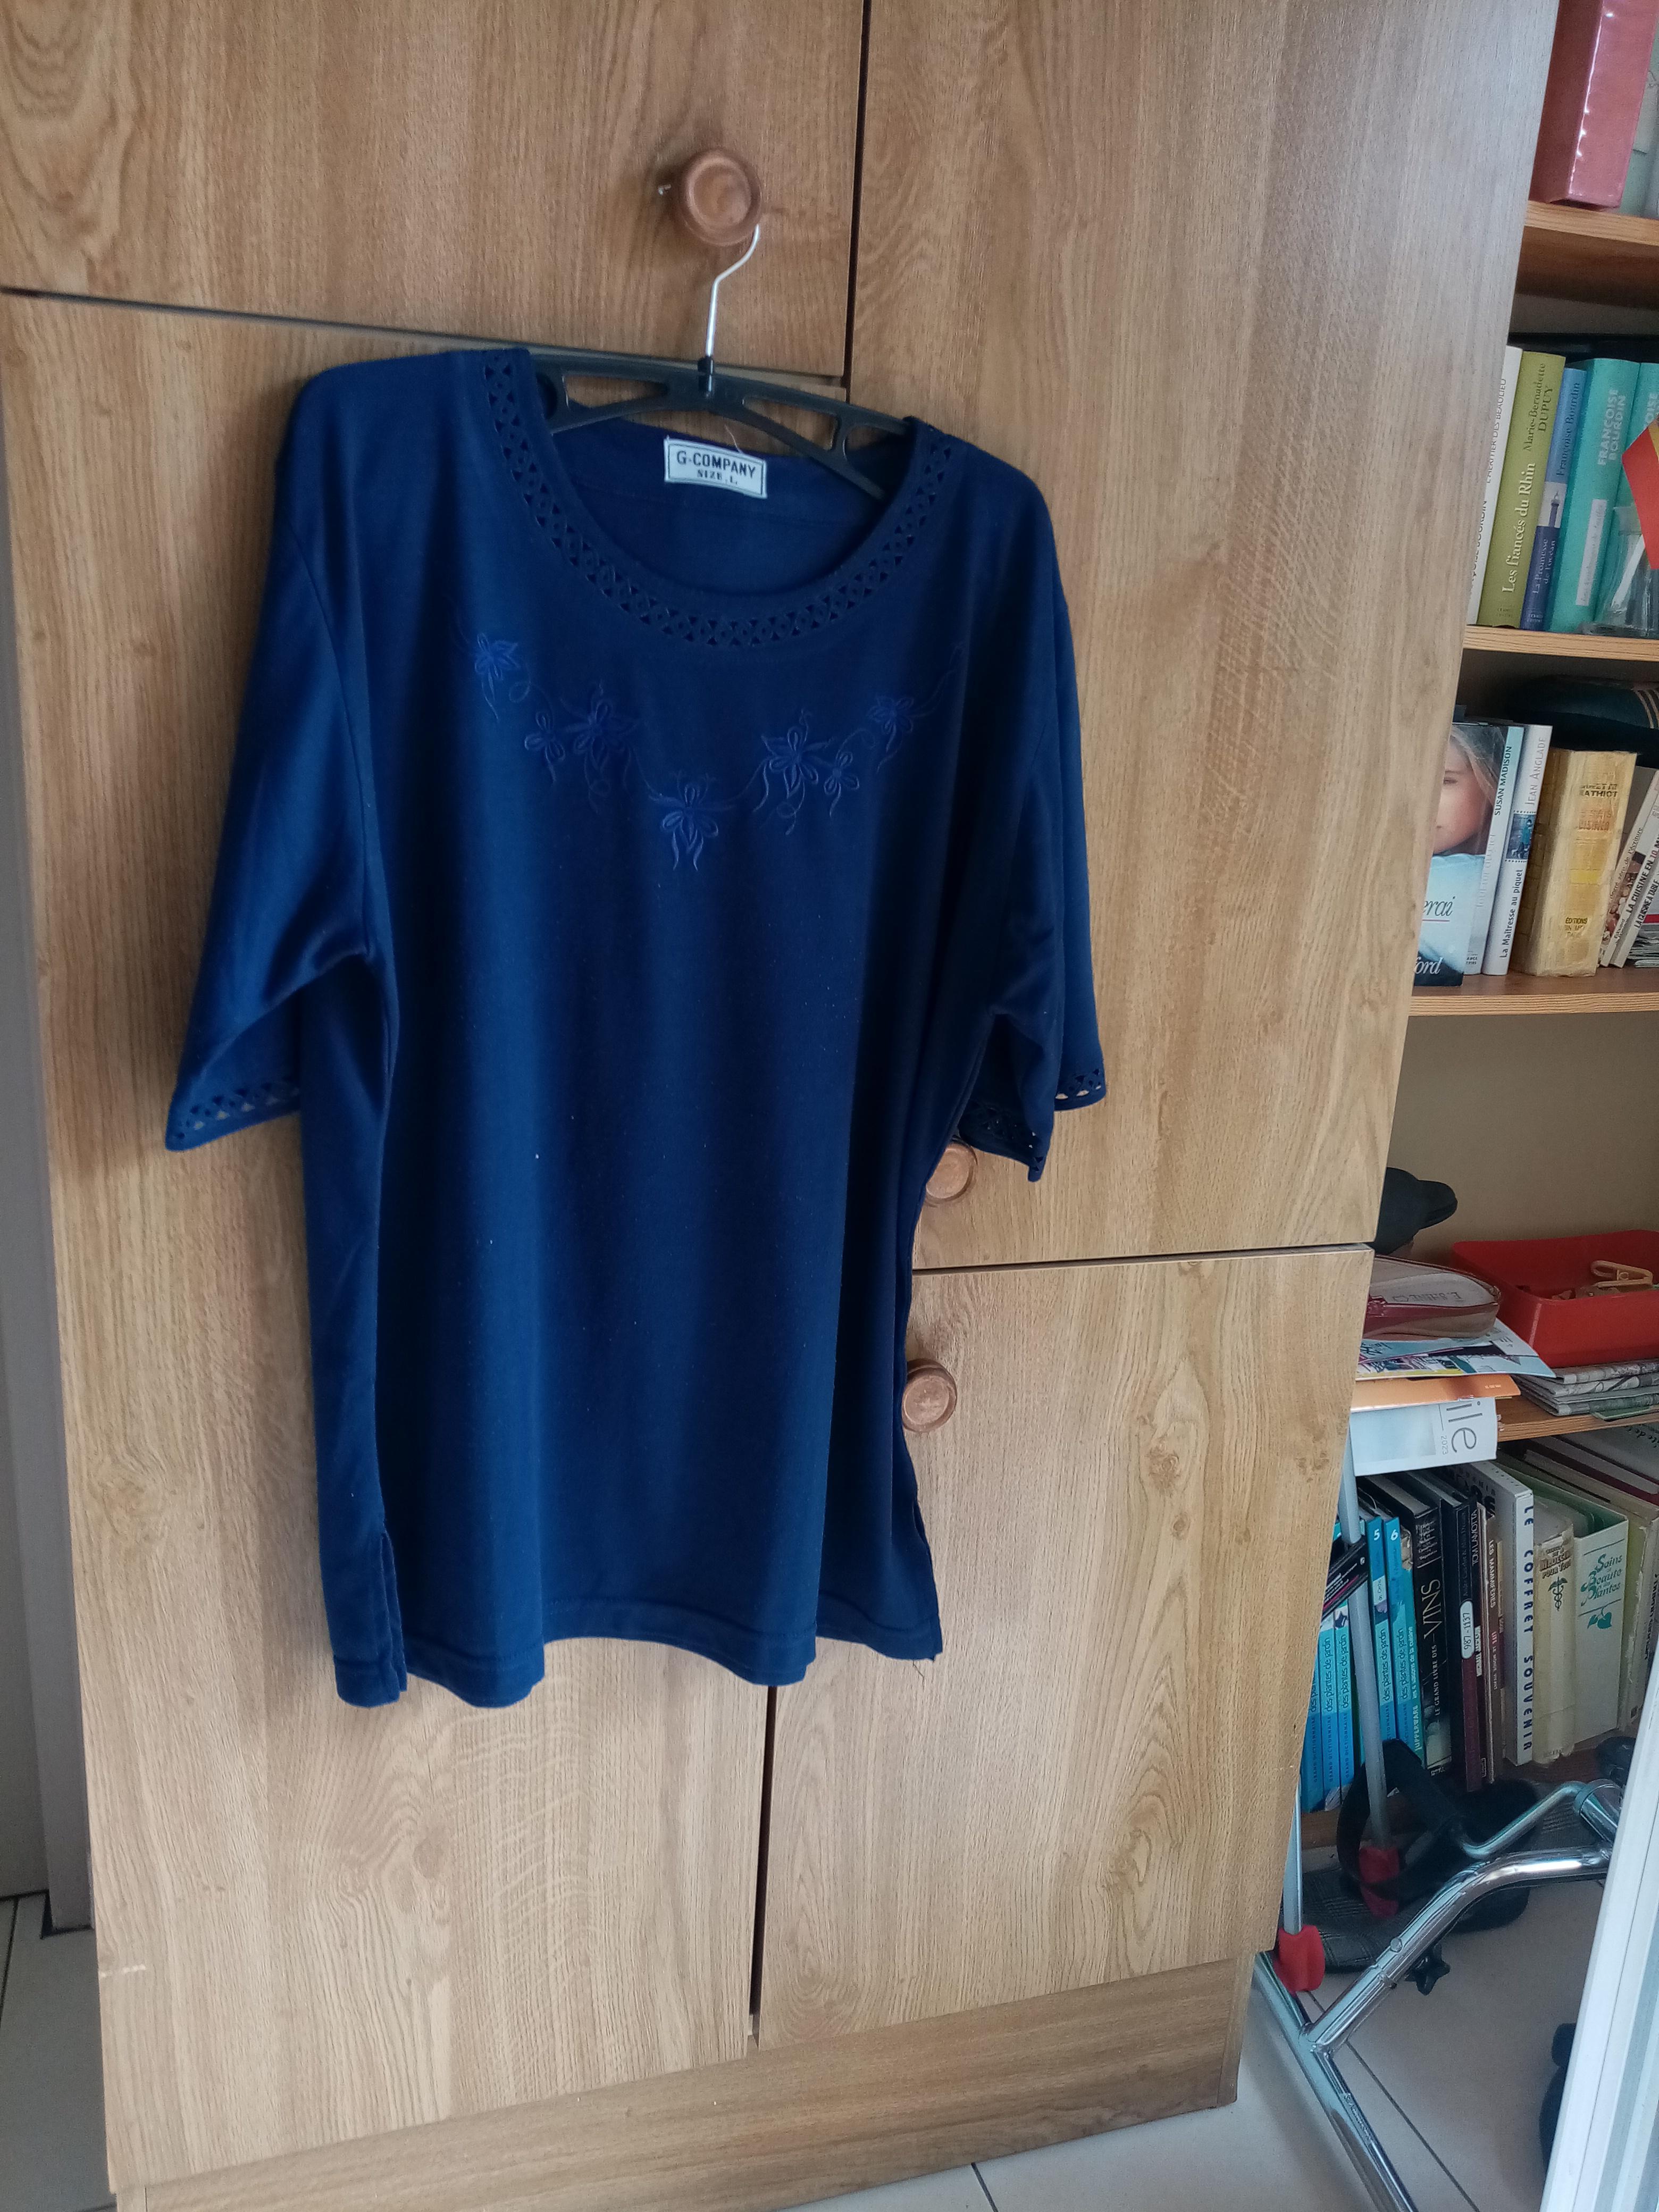 troc de troc tee-shirt  bleu marine marque compapany taille l   4  noisetts image 0